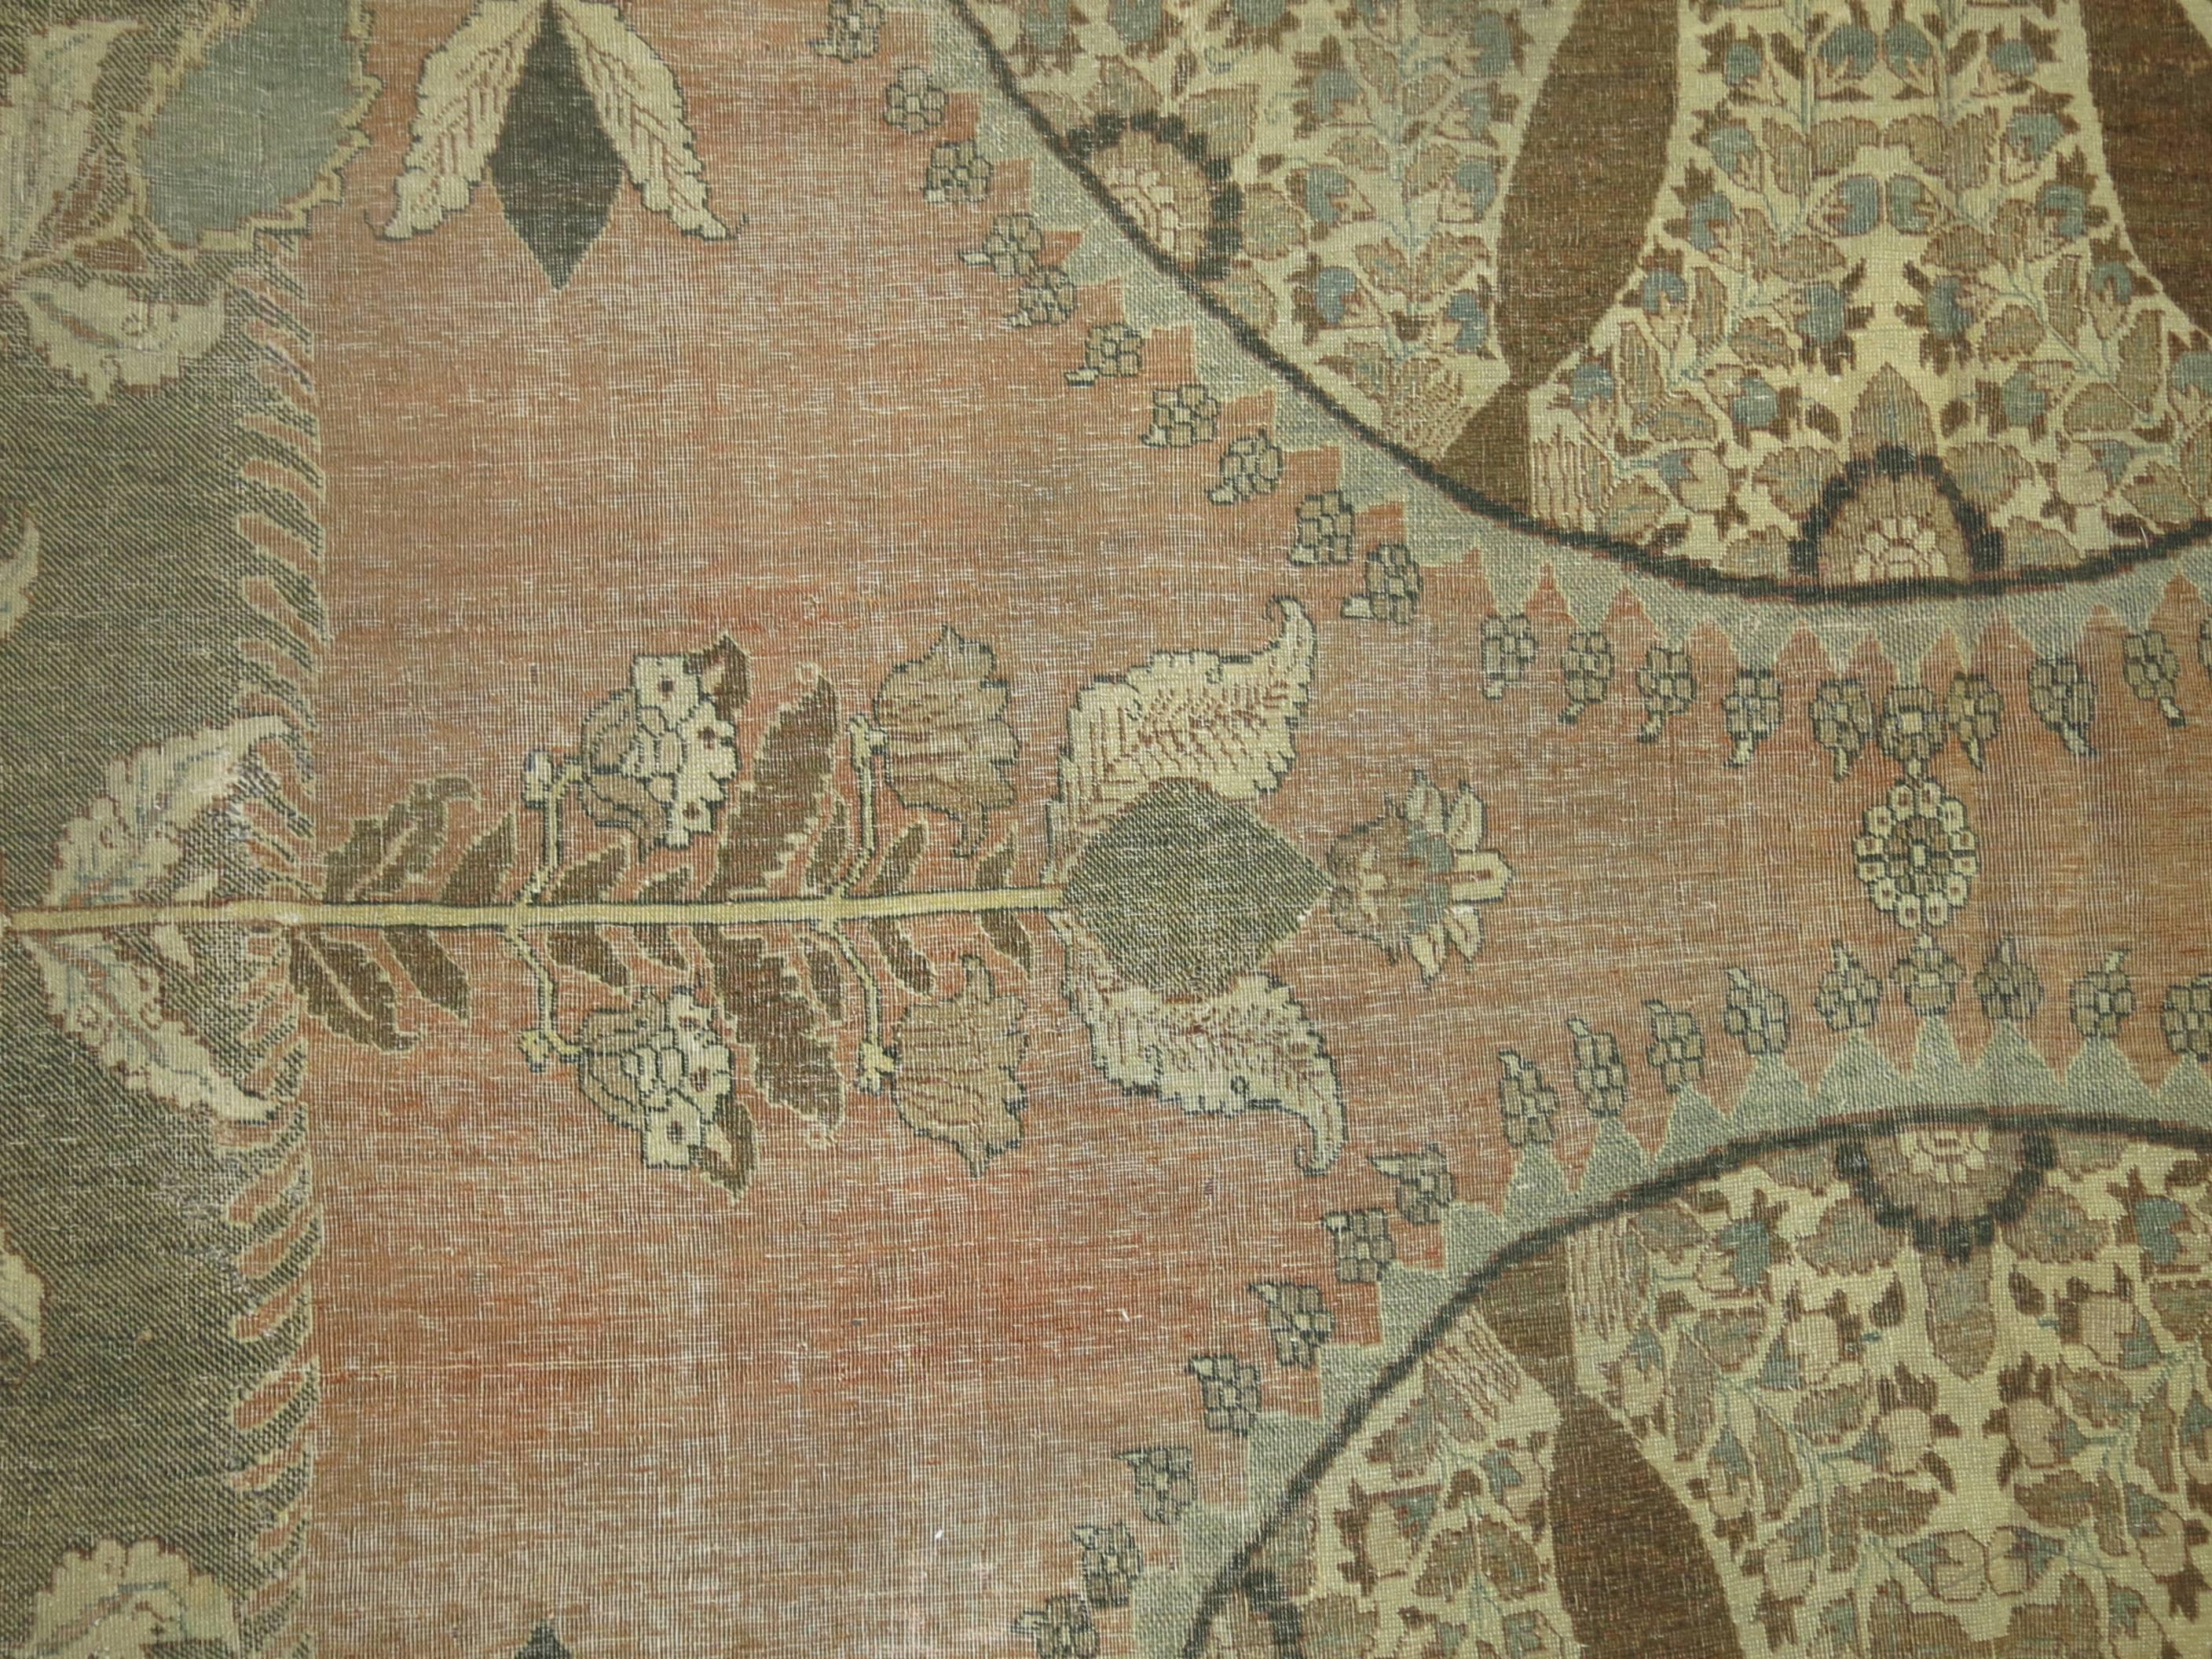 Un tapis tabriz antique persan absolument phénoménal datant du 3ème trimestre du 19ème siècle. Un médaillon situé au centre de la pièce et deux médaillons tissés à mi-chemin sur les bordures suivantes, le tout sur un fond de tabac avec différentes